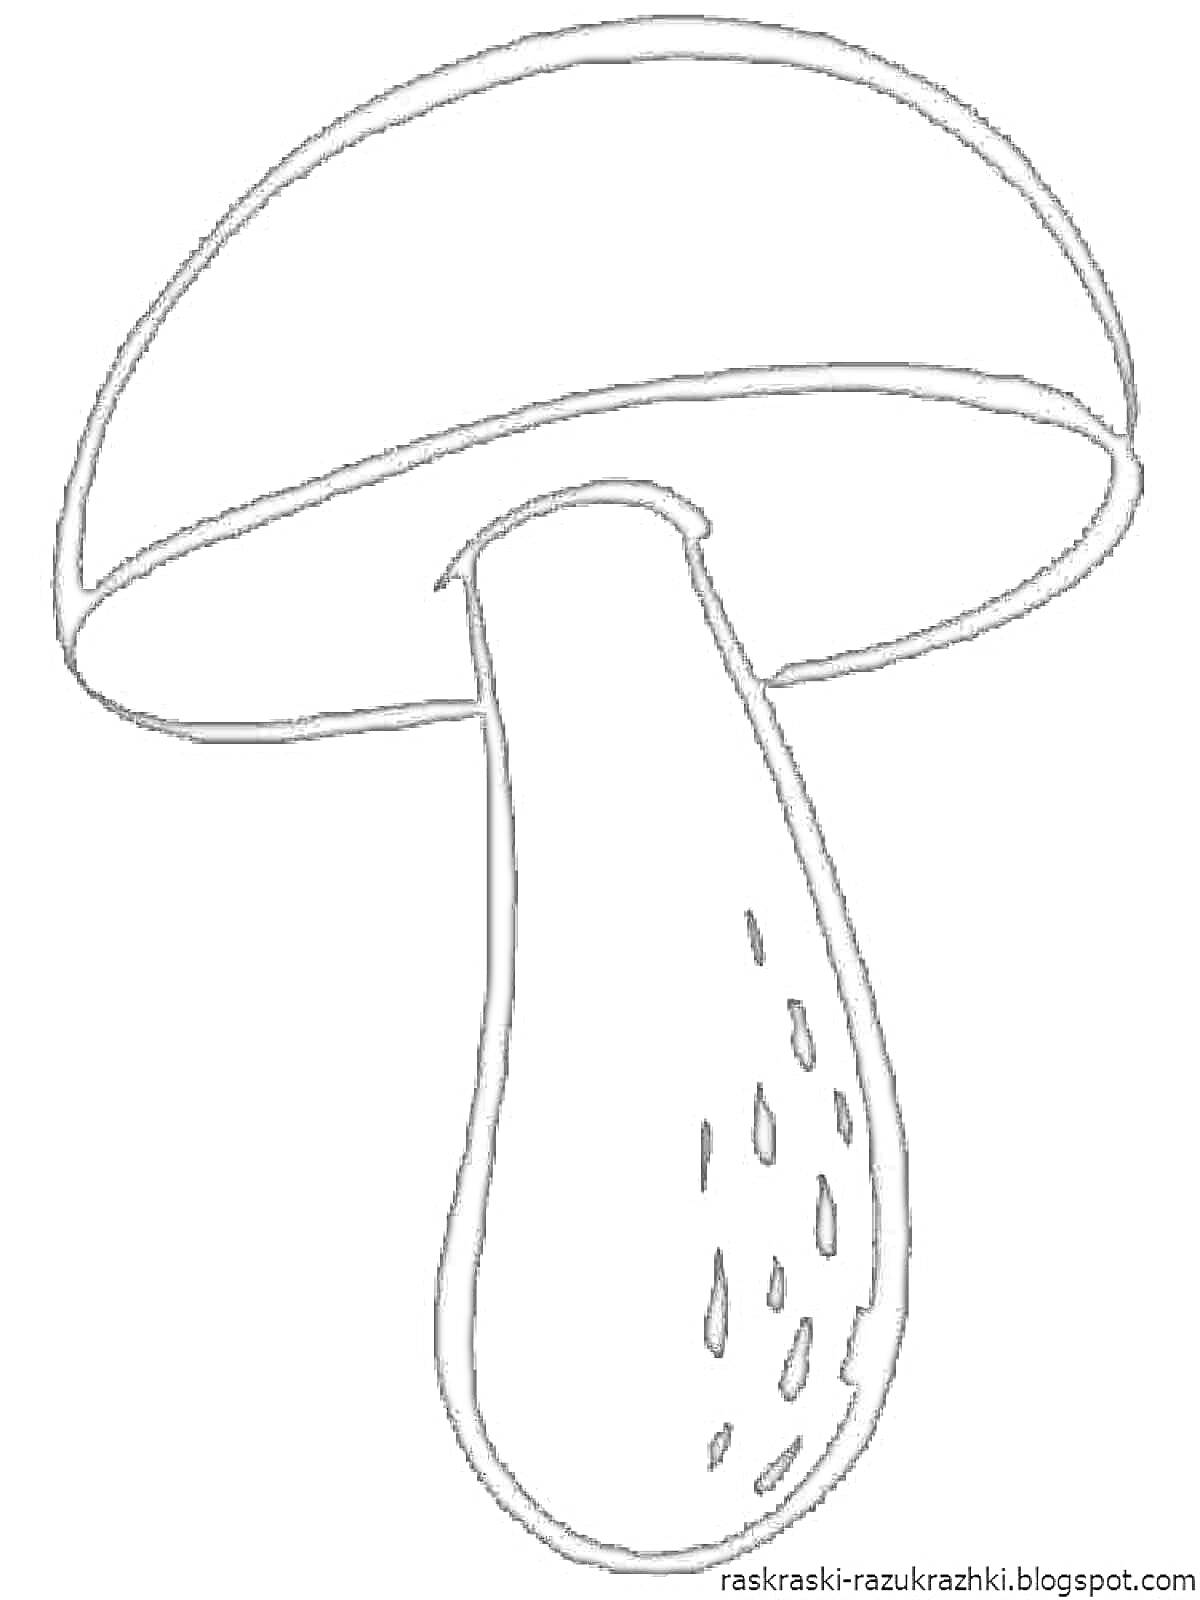 Раскраска гриб с шляпкой и ножкой, пятнышки на ножке